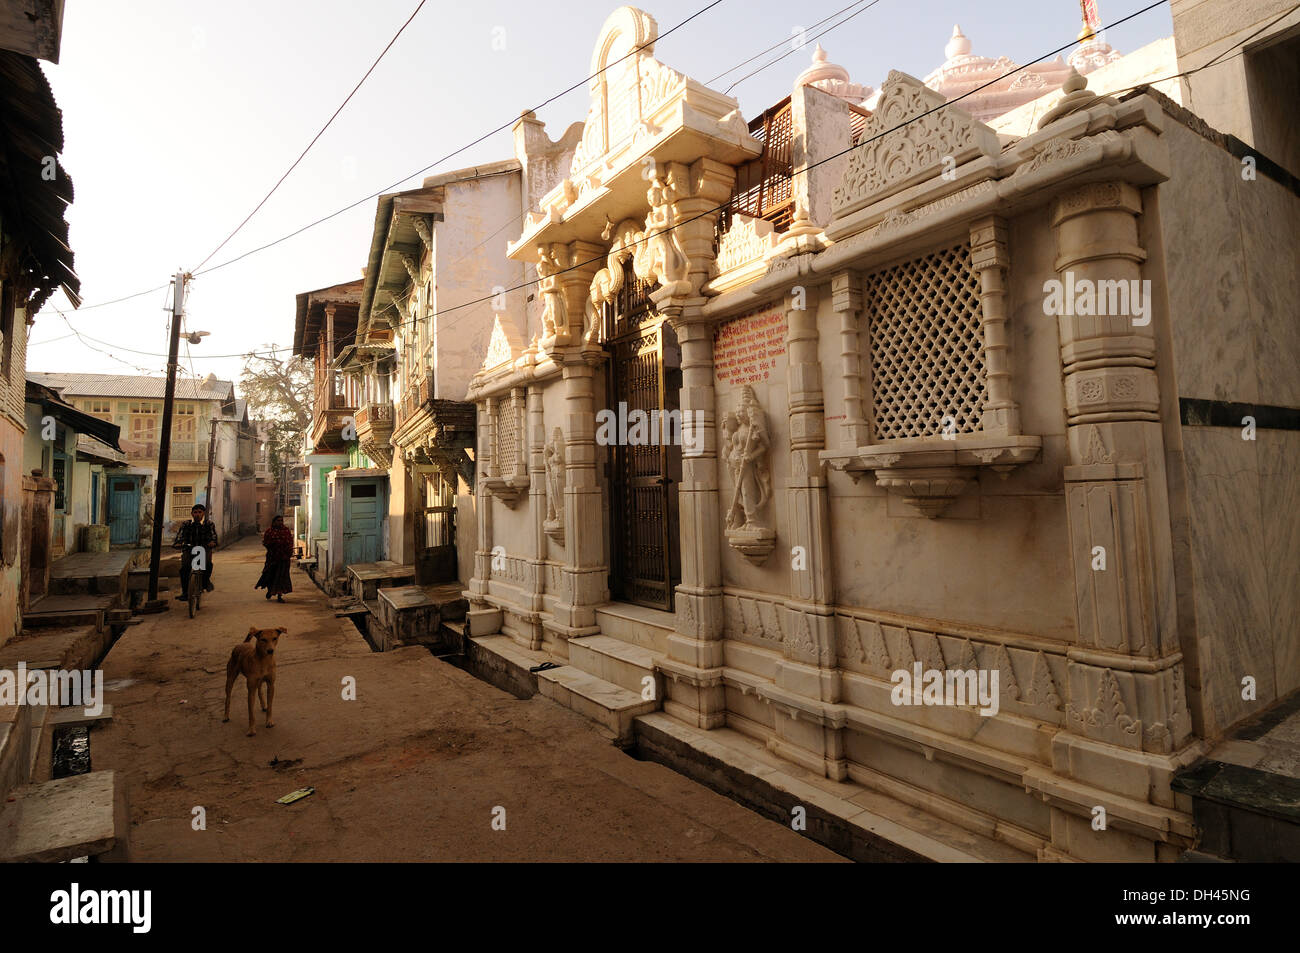 Village temple Gujarat India Stock Photo